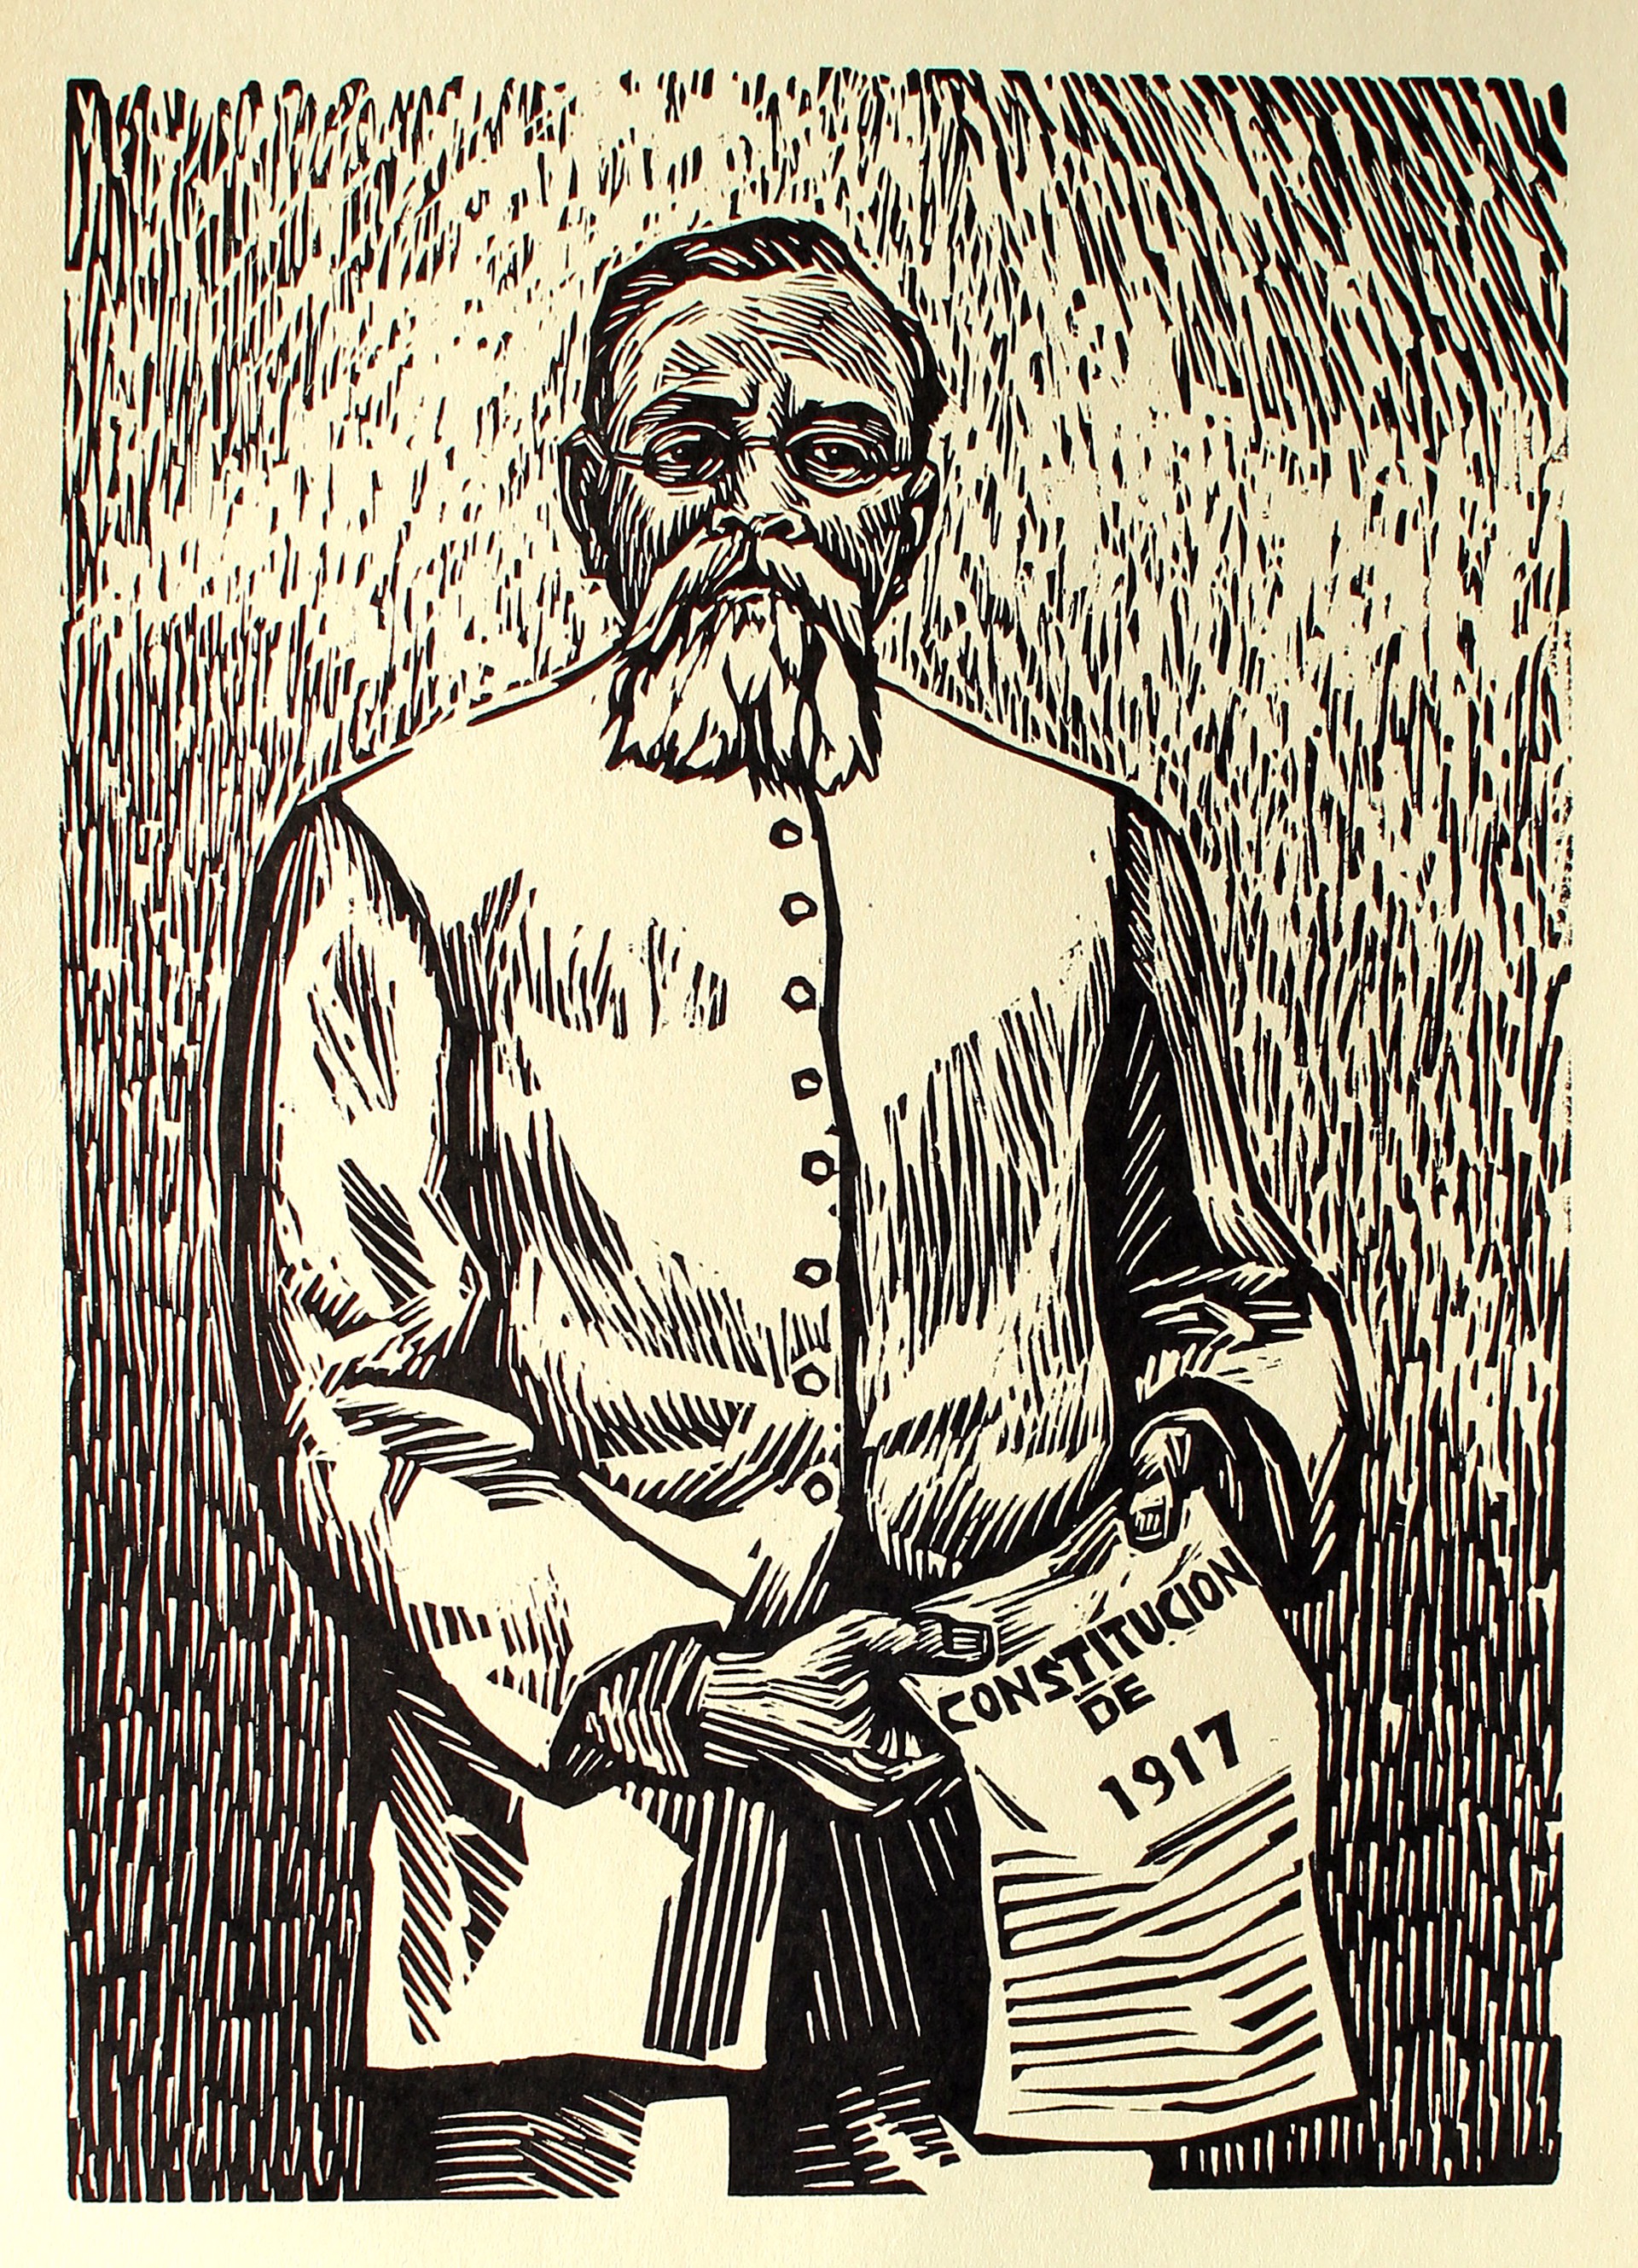 Venustiano Carranza, Promotor de la Constitución de 1917 (1859-1920) by Alfredo Zalce